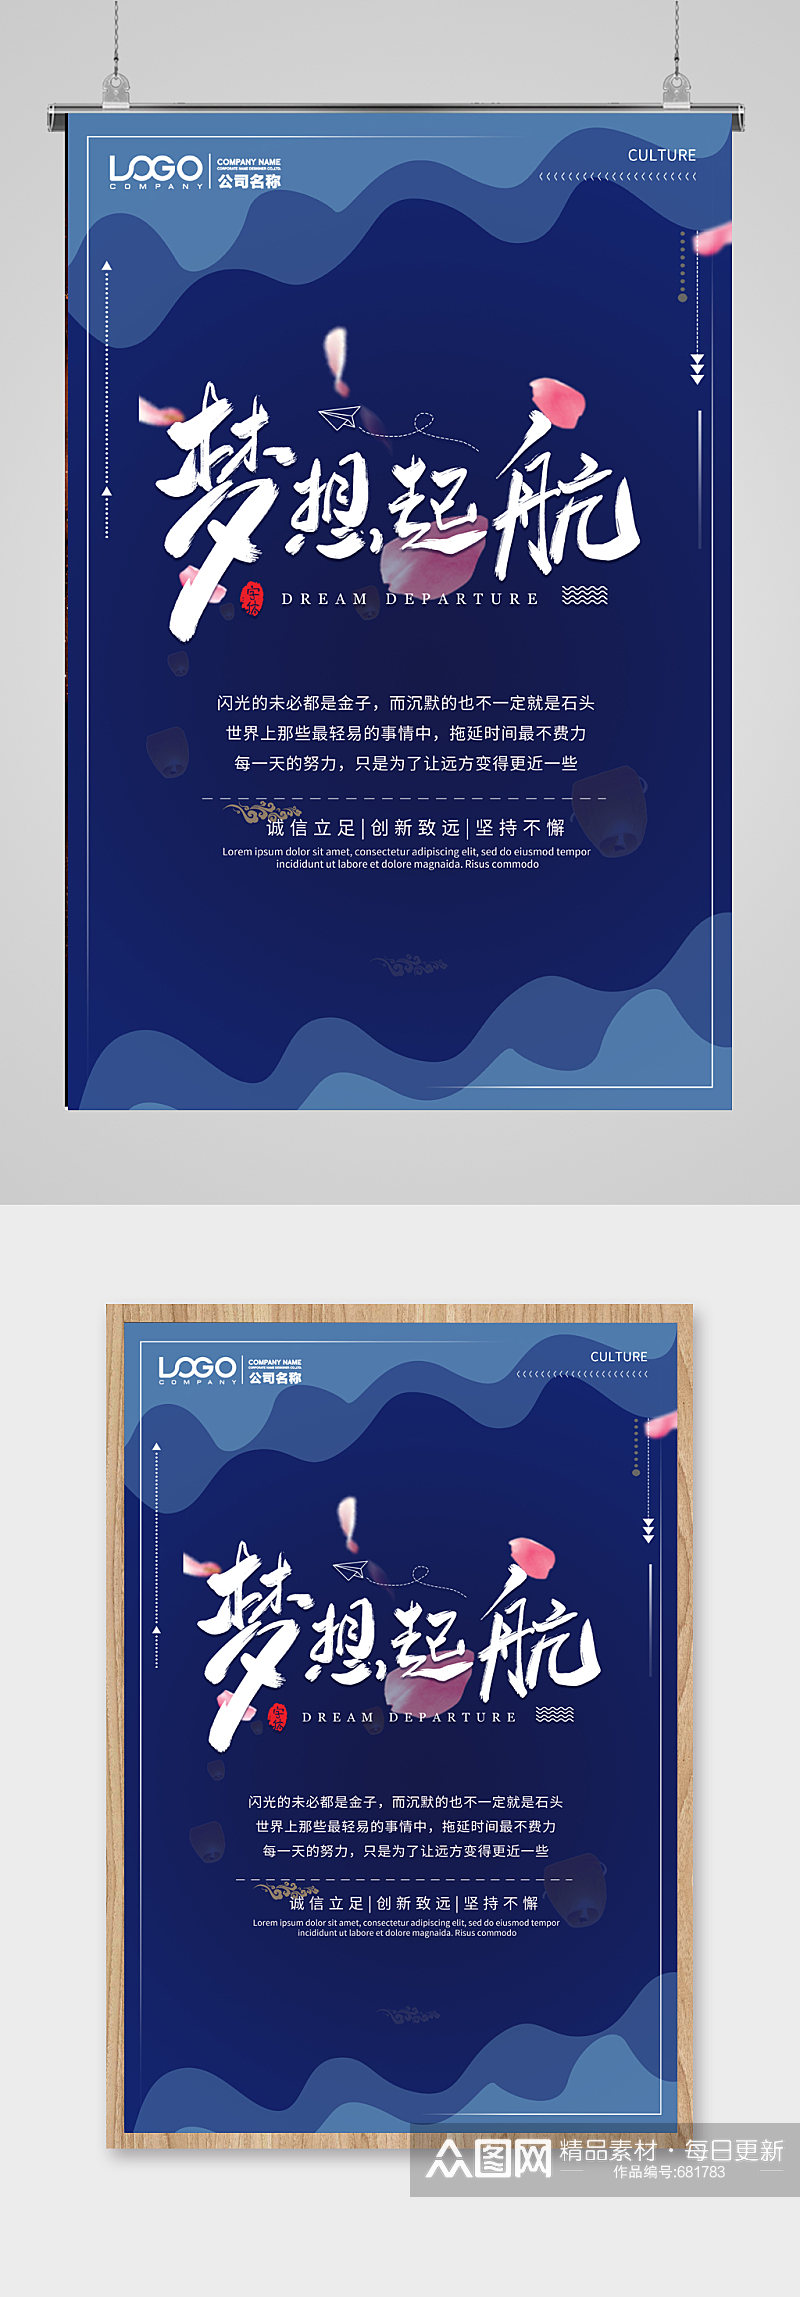 梦想起航蓝色波浪图形梦幻浪漫企业文化海报素材